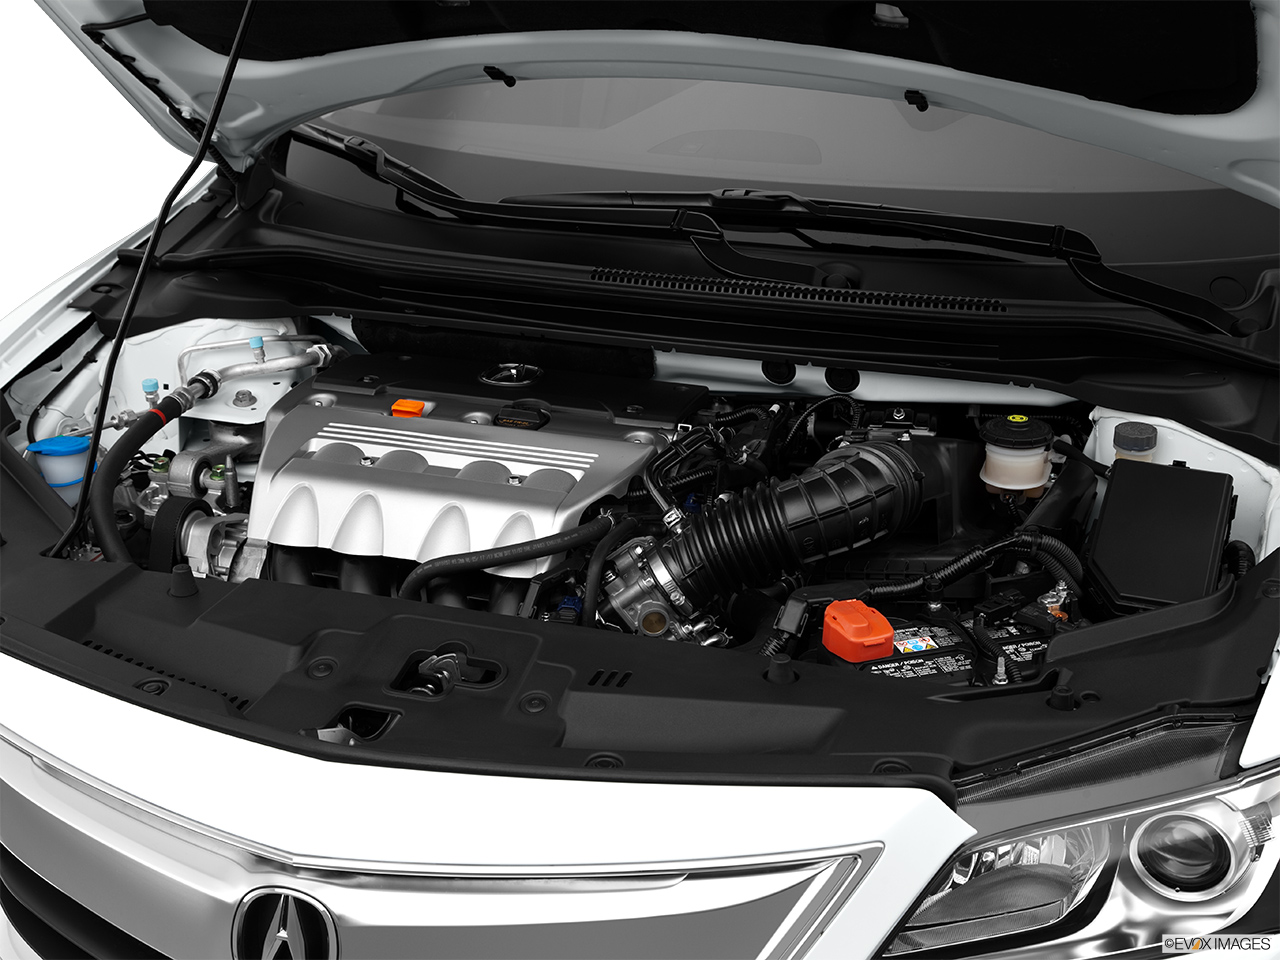 2015 Acura ILX 6-Speed Manual Engine. 